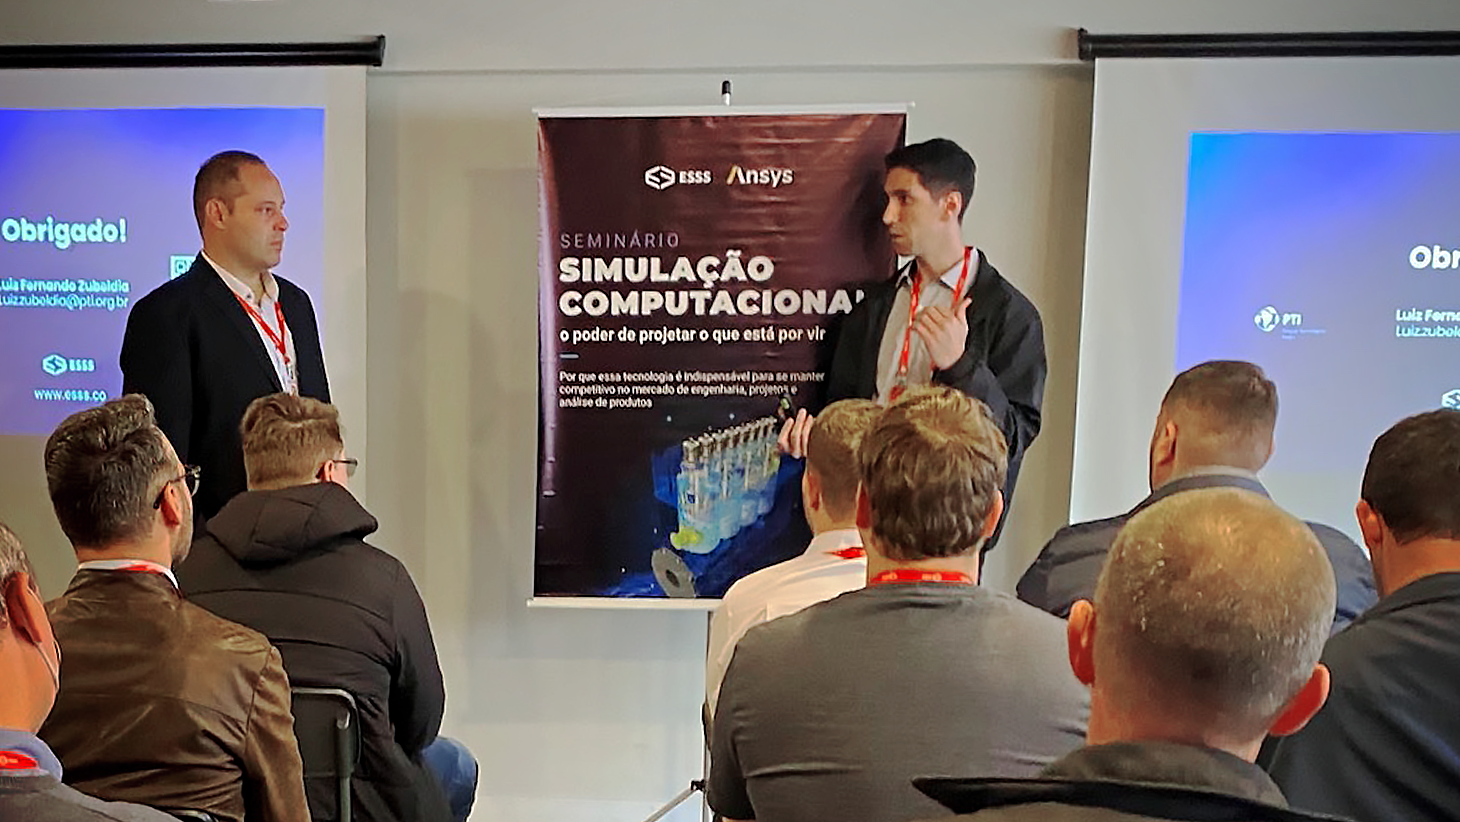 Seminário em Curitiba reuniu profissionais da engenharia para discutir os caminhos da simulação computacional